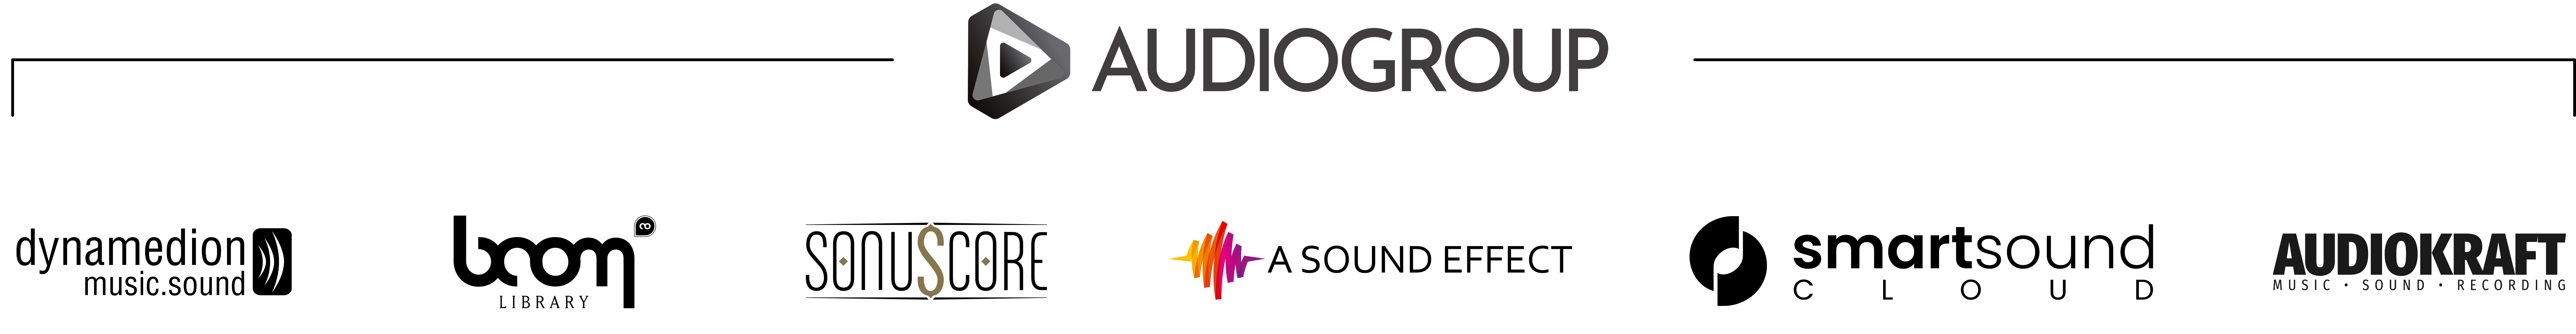 Audiogroup Logos